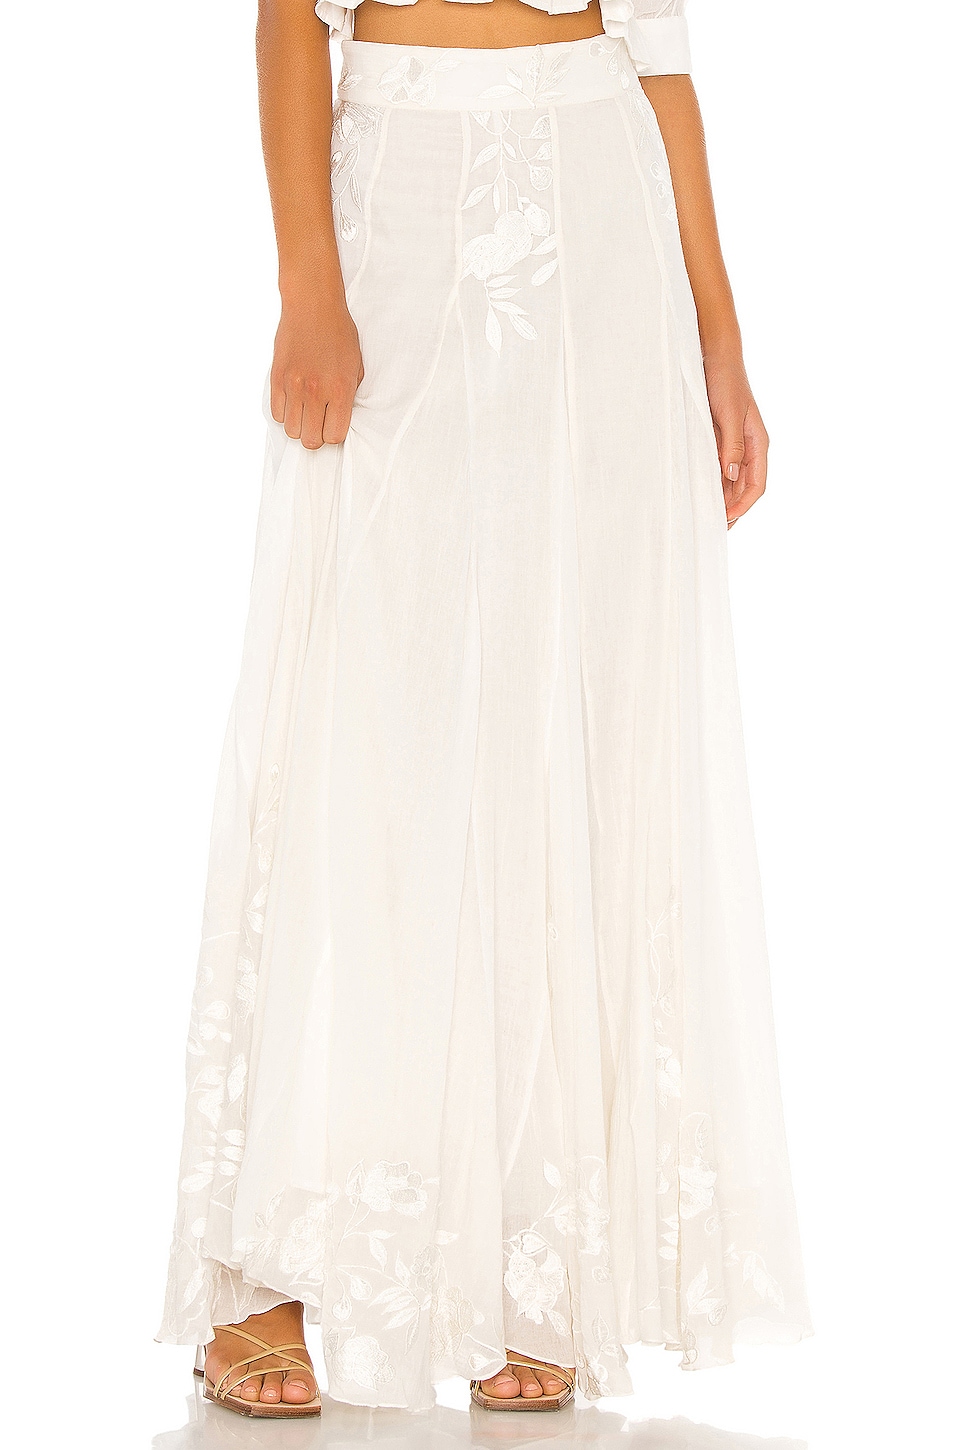 HEMANT AND NANDITA Sole Skirt in White | REVOLVE